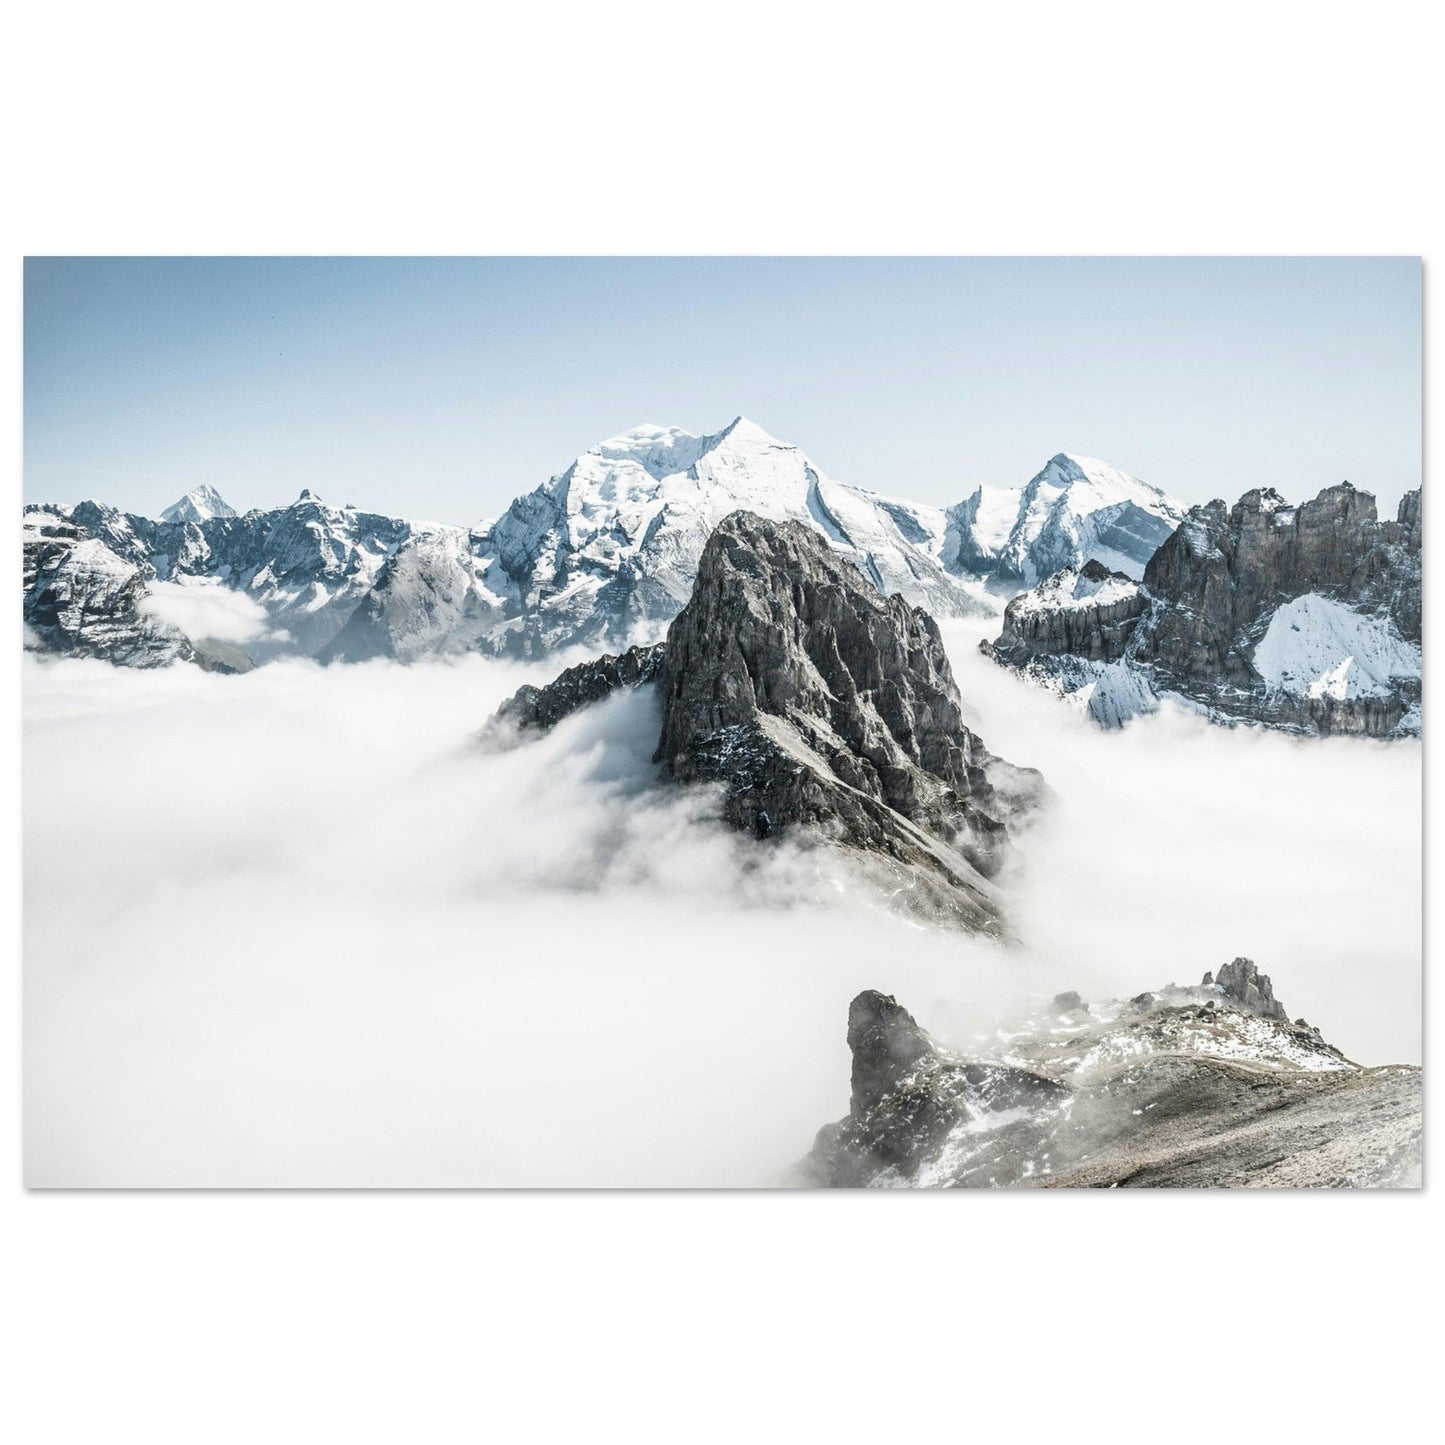 Vente Photo mer de nuage à Bunderspitz, Adelboden, Suisse - Tableau photo alu montagne